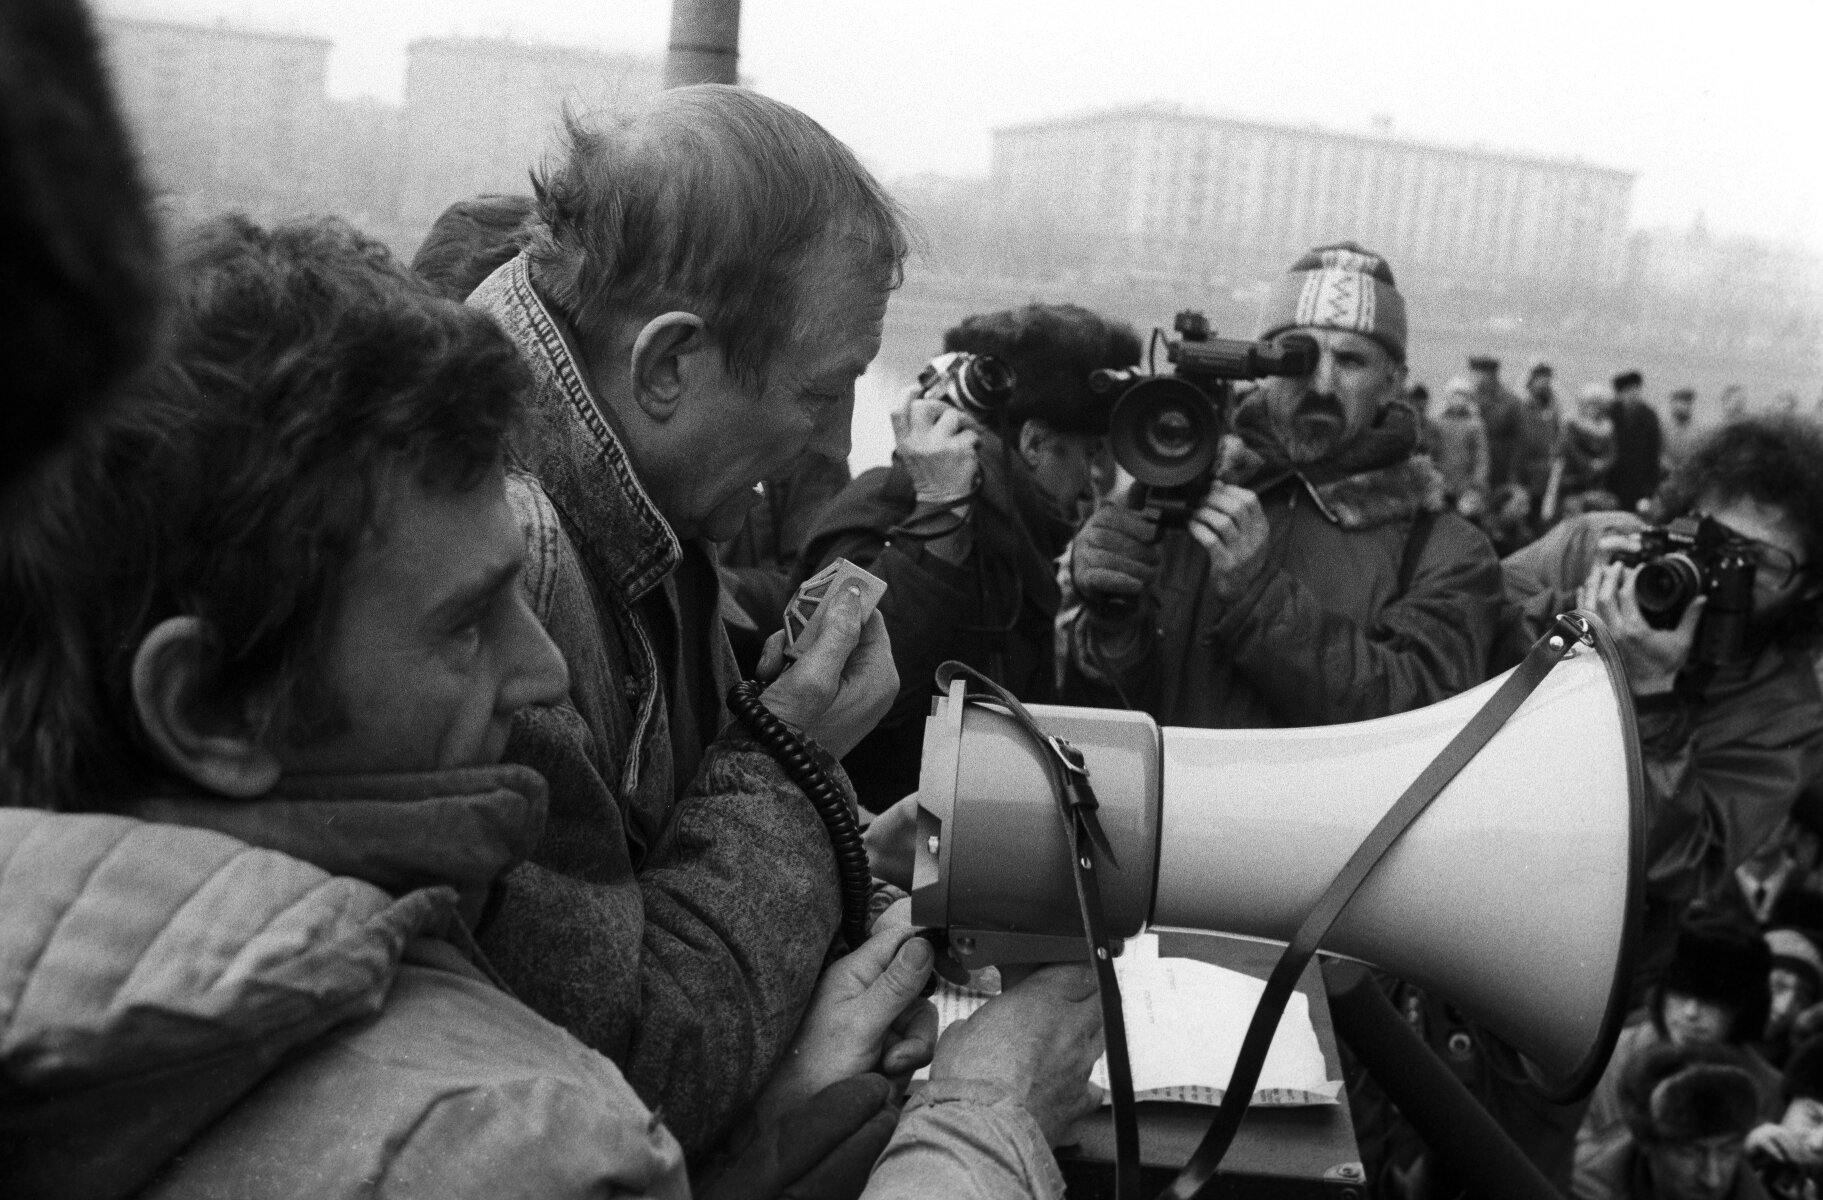 <p>В 1988 году Евтушенко стал членом правозащитного исторического общества &laquo;Мемориал&raquo;. На фотографии Евтушенко&nbsp;на митинге, который организовало общество.</p>